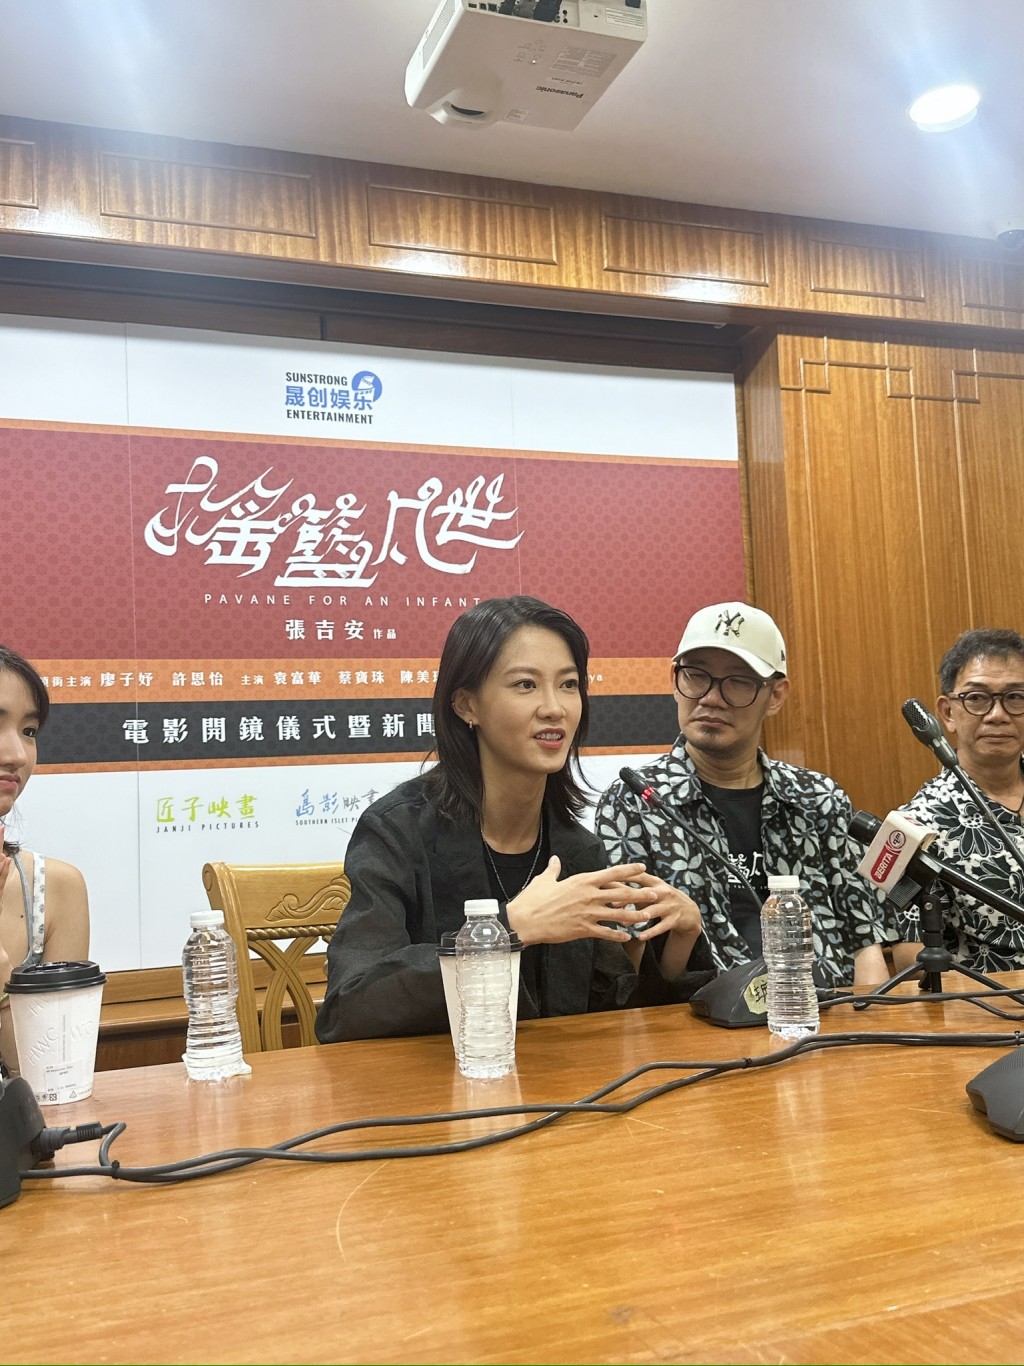 廖子妤拍摄由金马奖最佳新导演张吉安执导的新片《摇篮凡世》。